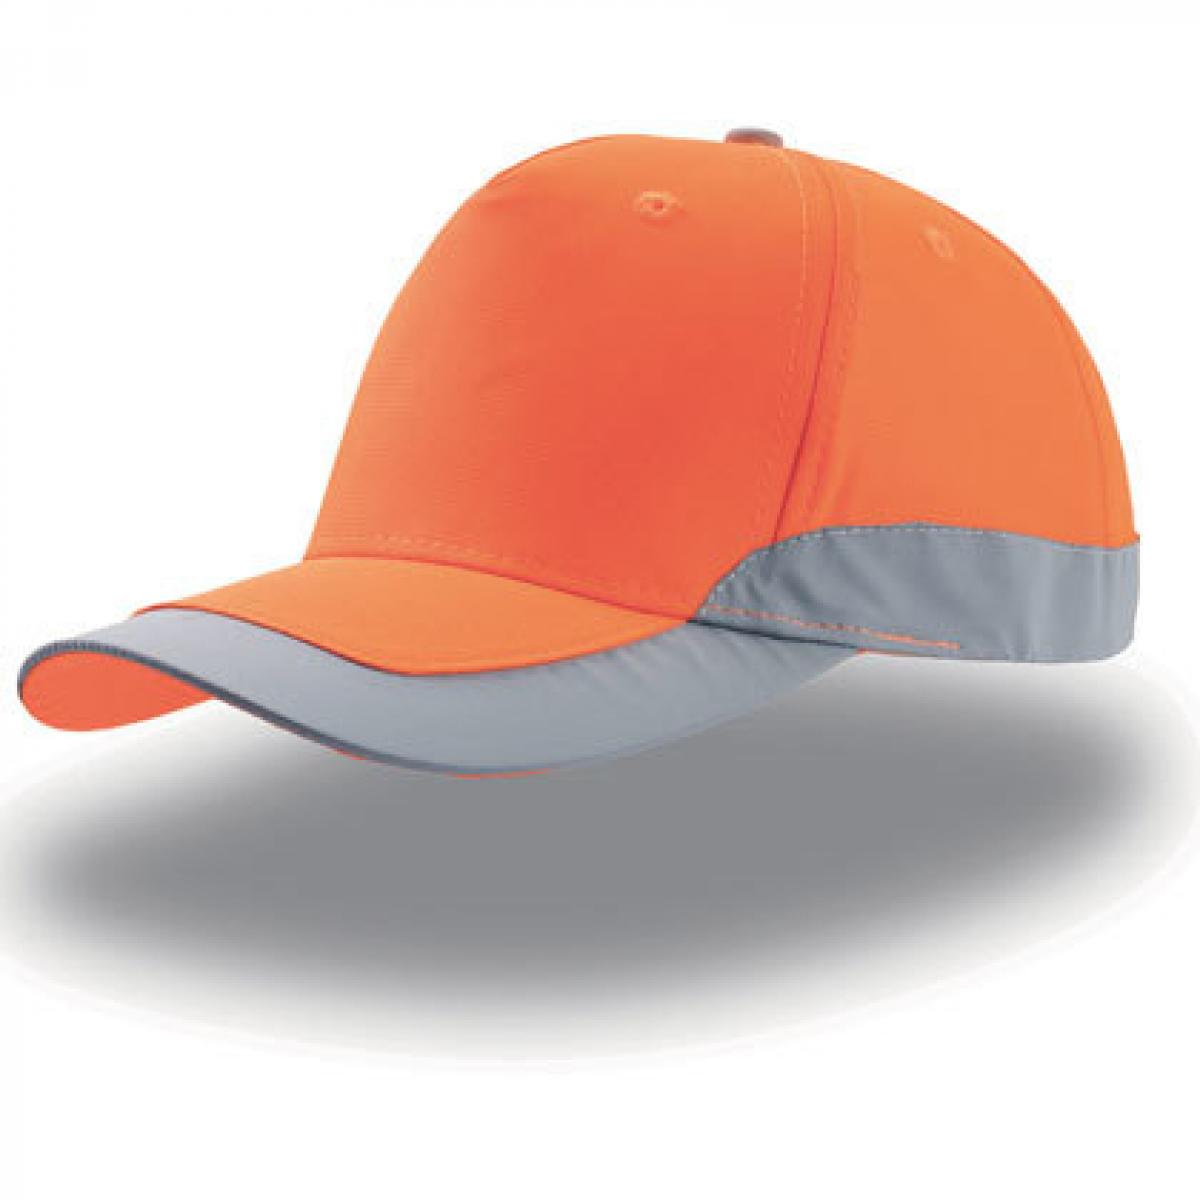 Hersteller: Atlantis Herstellernummer: HELP Artikelbezeichnung: Damen Helpy Cap / Verschluss mit Klettband Farbe: Orange Fluo